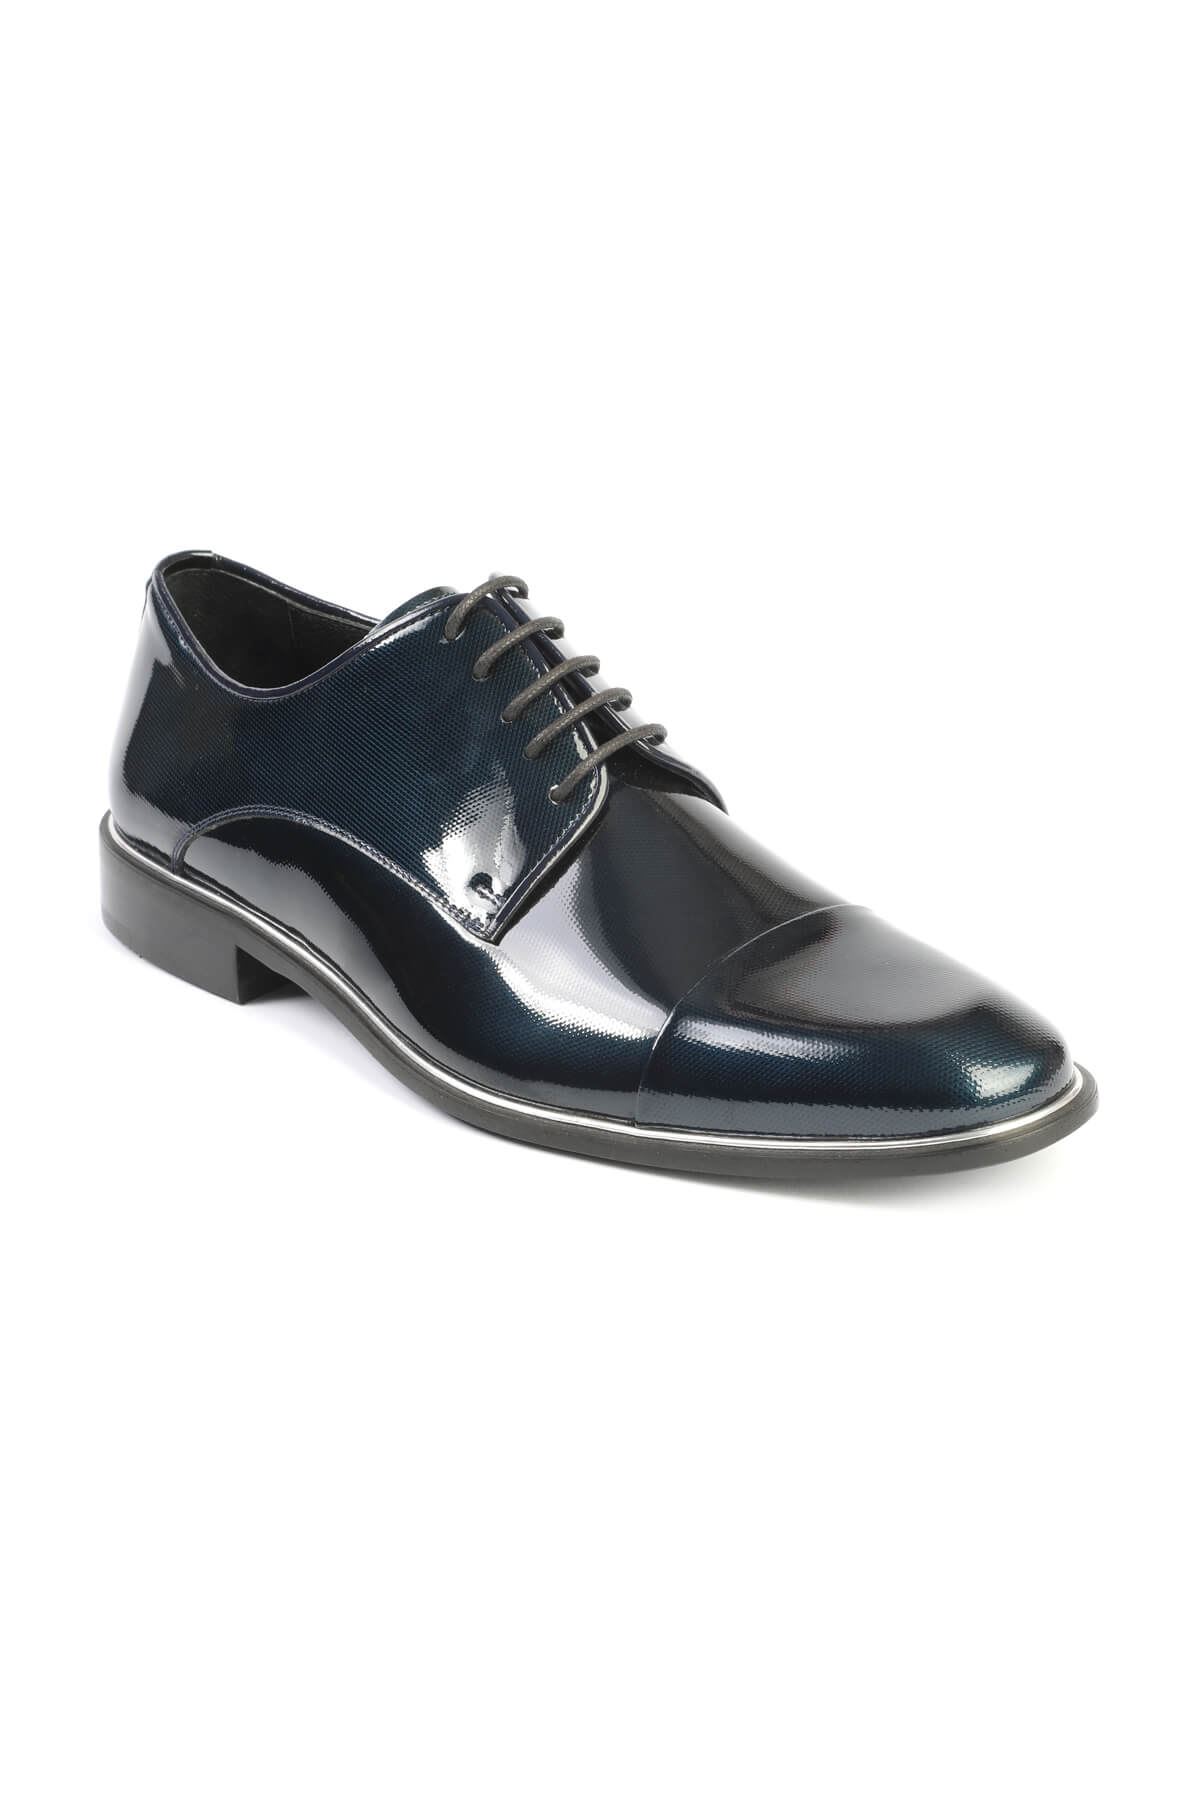 Libero 2474 Lacivert Klasik Erkek Ayakkabı